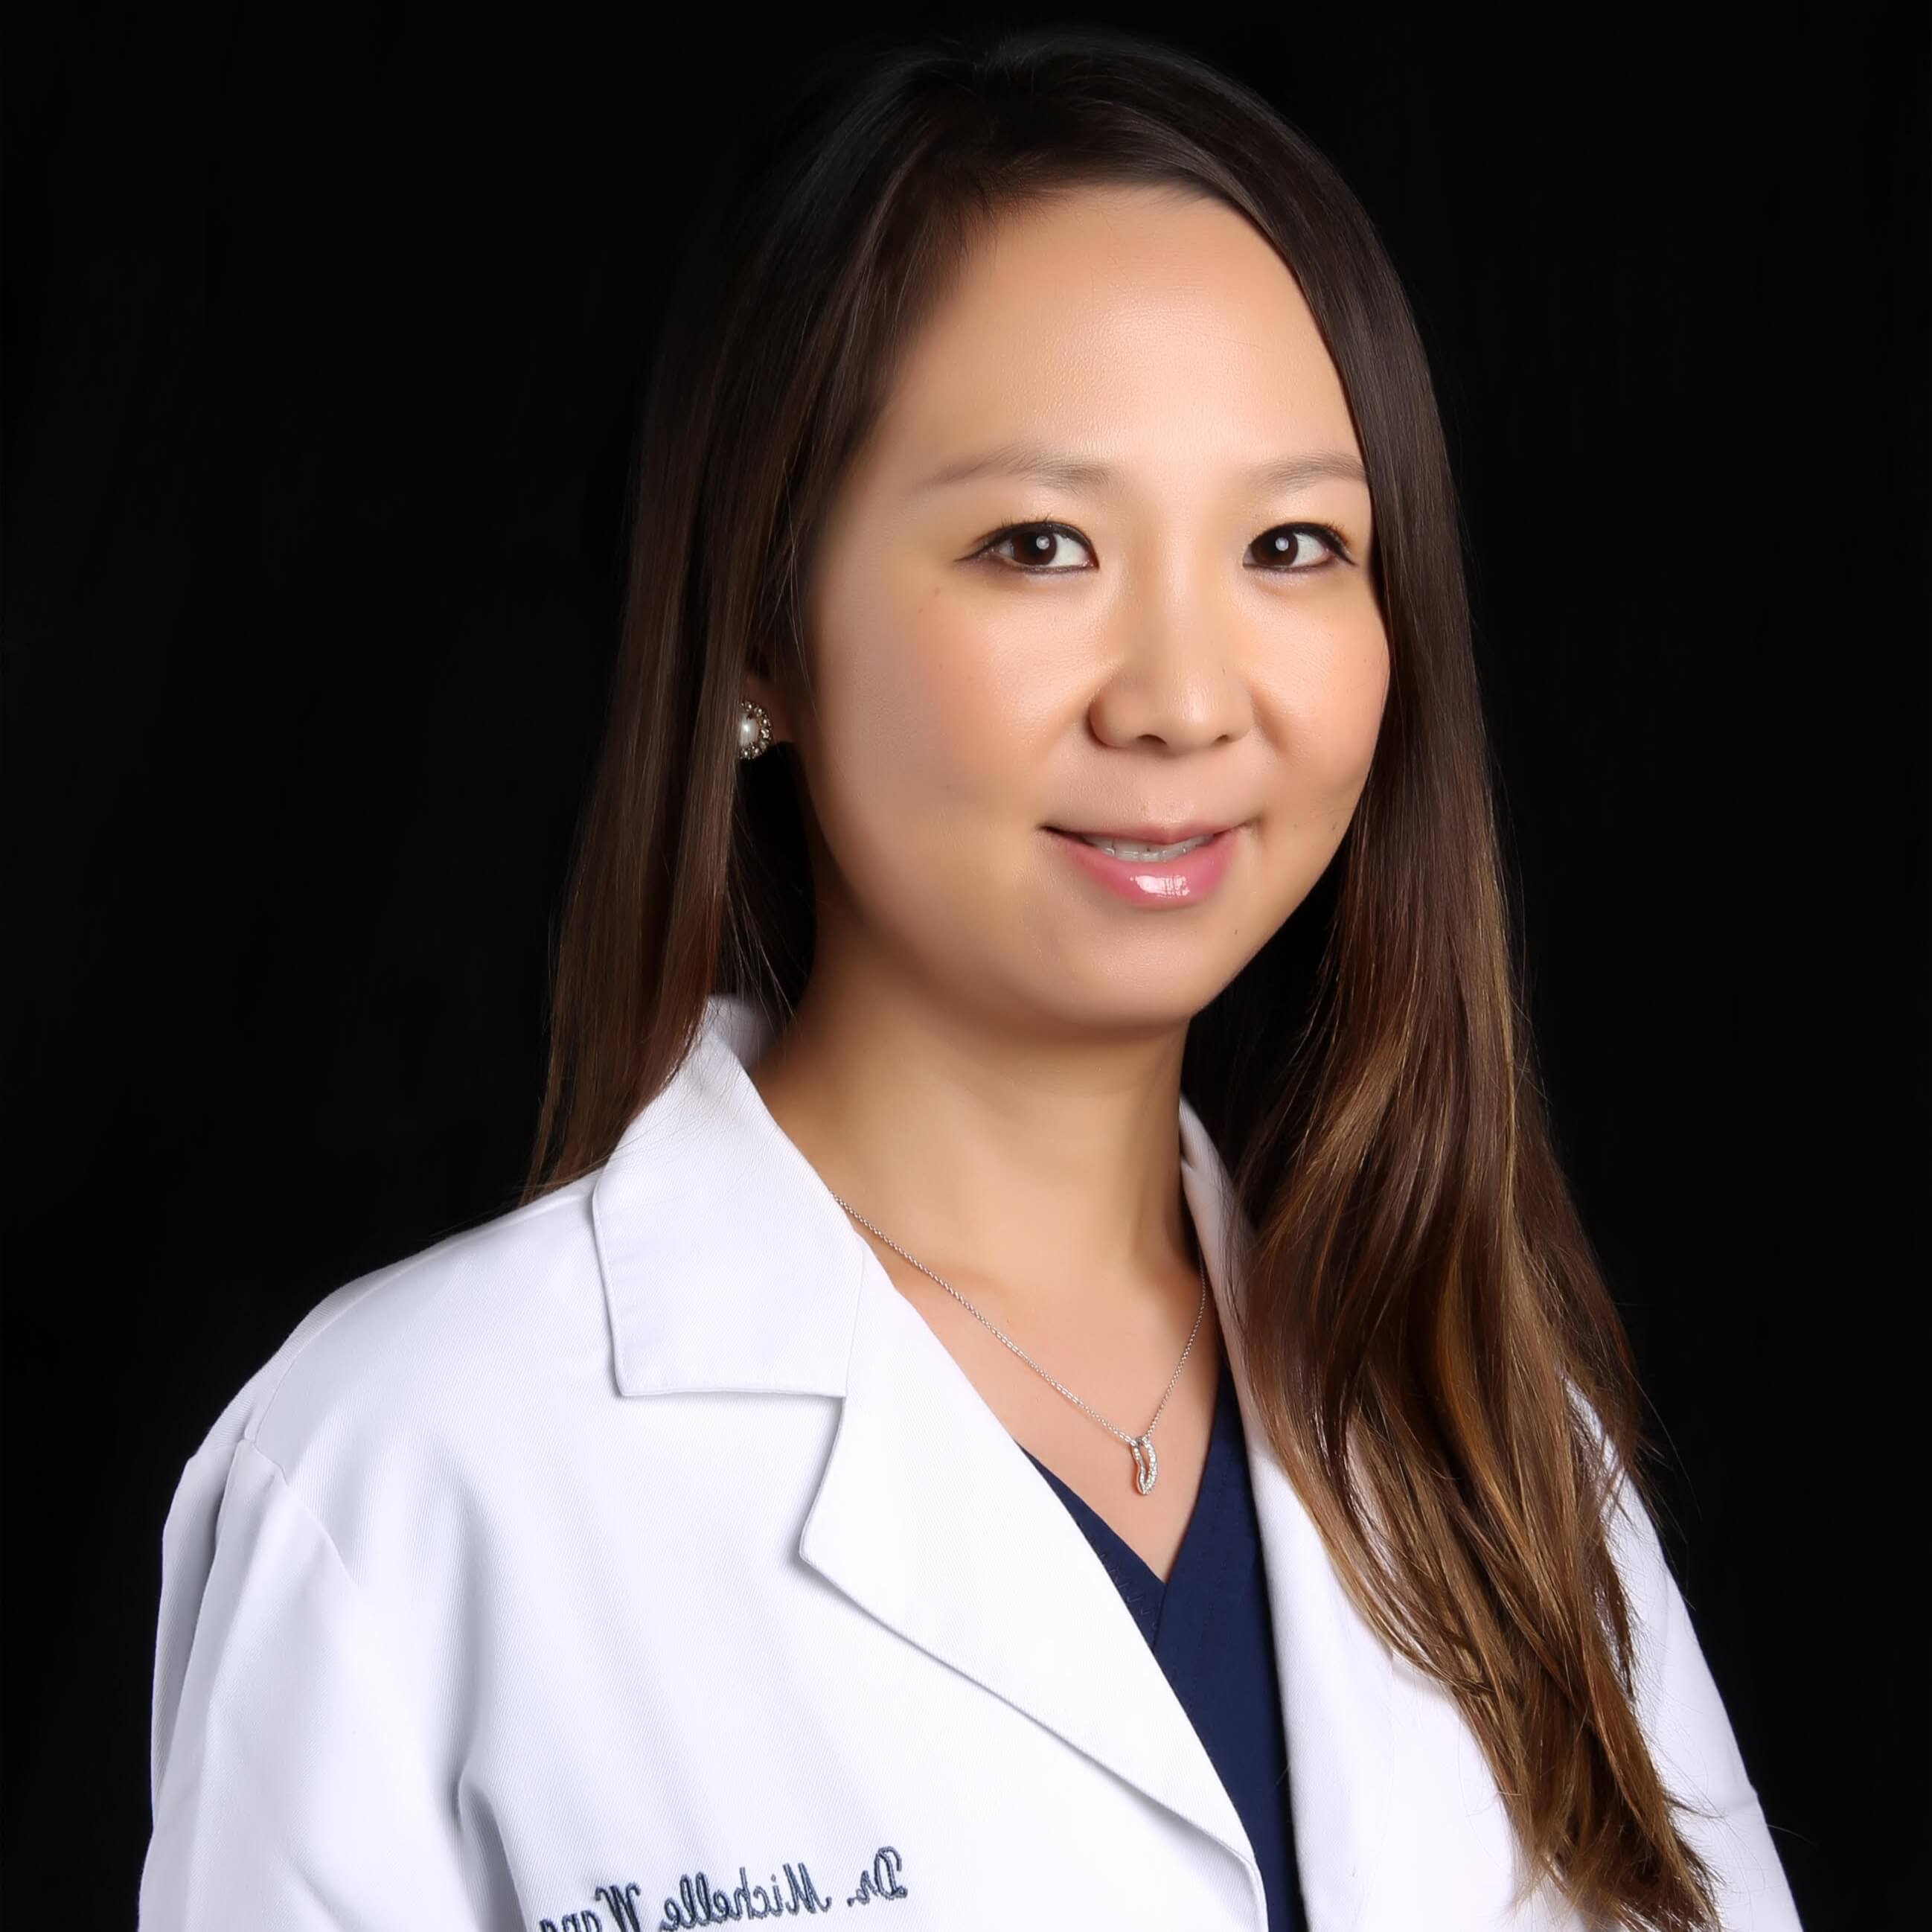 Dr. Michelle Wang, DMD